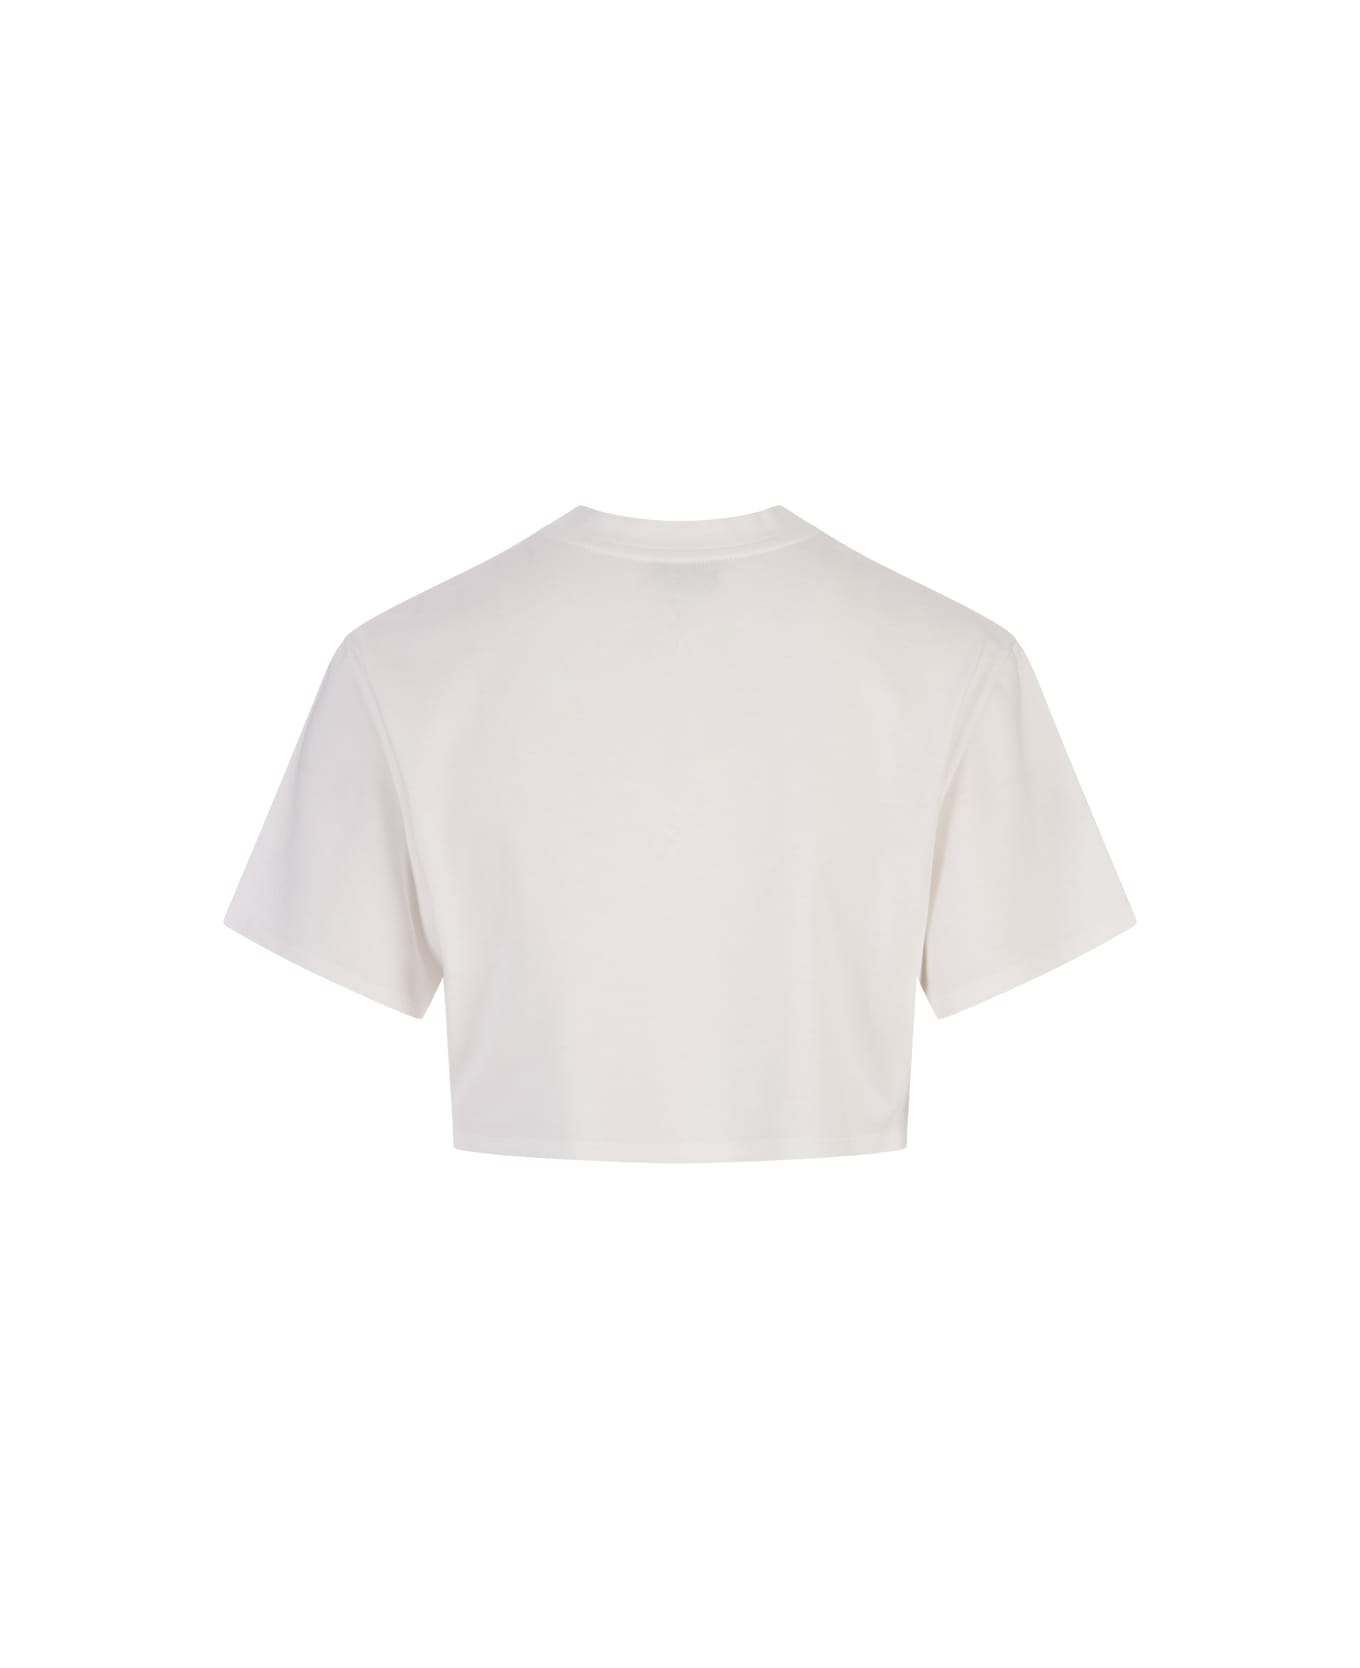 Giambattista Valli White Crop Top With Micromosaic Print - White Tシャツ